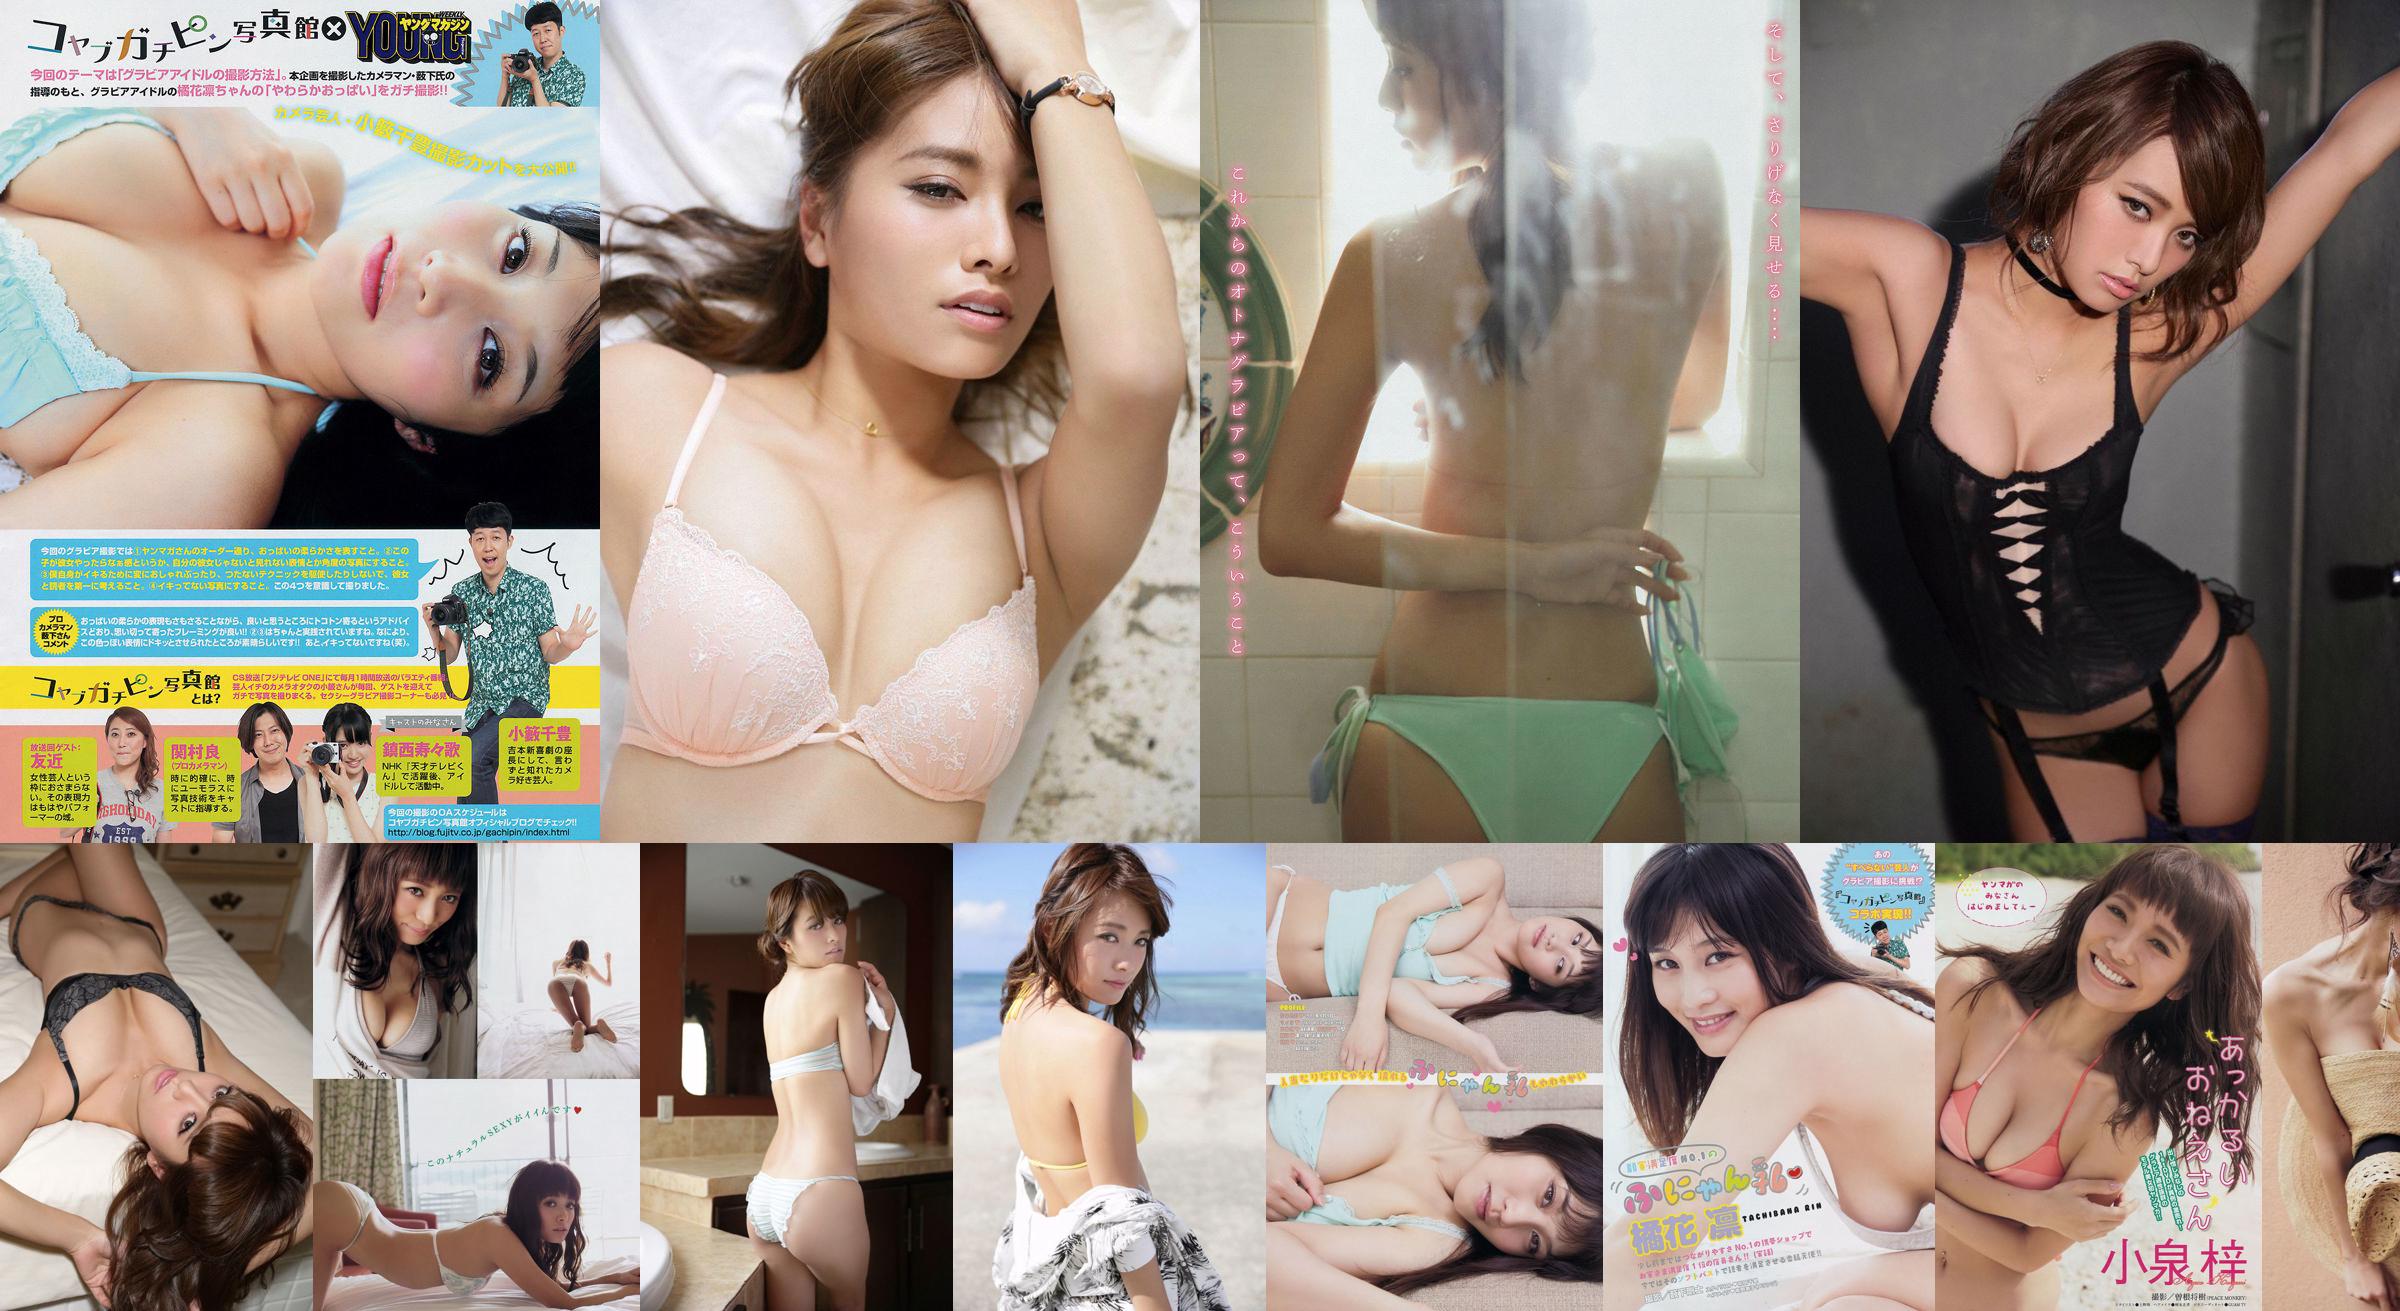 [Young Magazine] Azusa Koizumi Tachibana Rin 2014 No.43 Photo Magazine No.2670aa Page 2